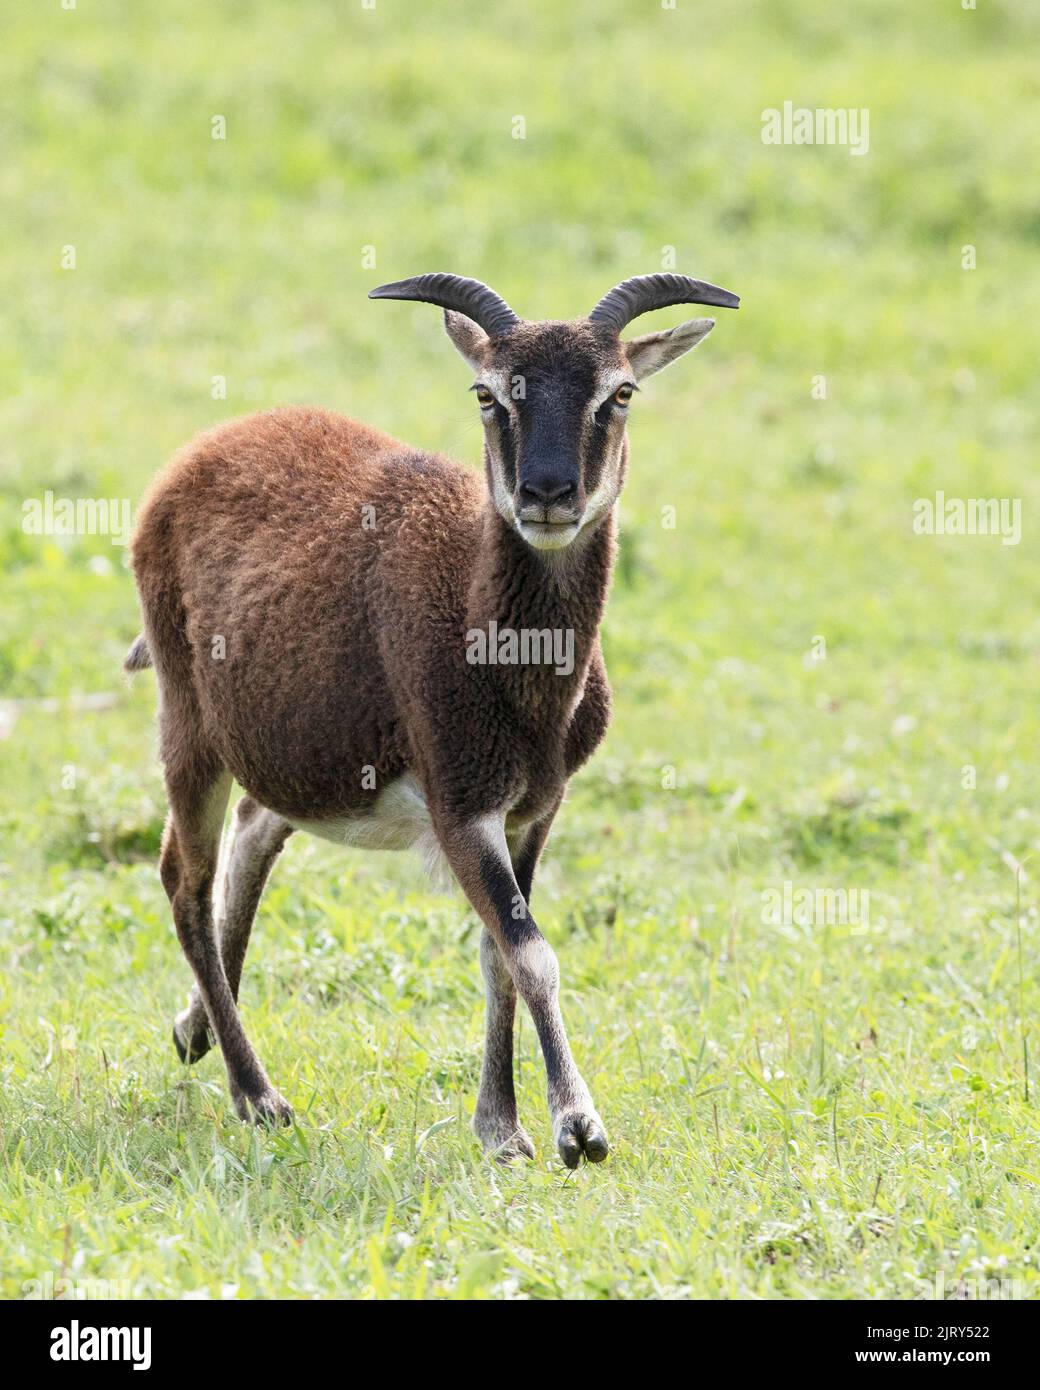 Oveja de Soay, una rara raza de ganado similar a los antepasados de las ovejas domésticas, caminando en pastos de pasto en una granja del patrimonio en Canadá. Ovis aries Foto de stock